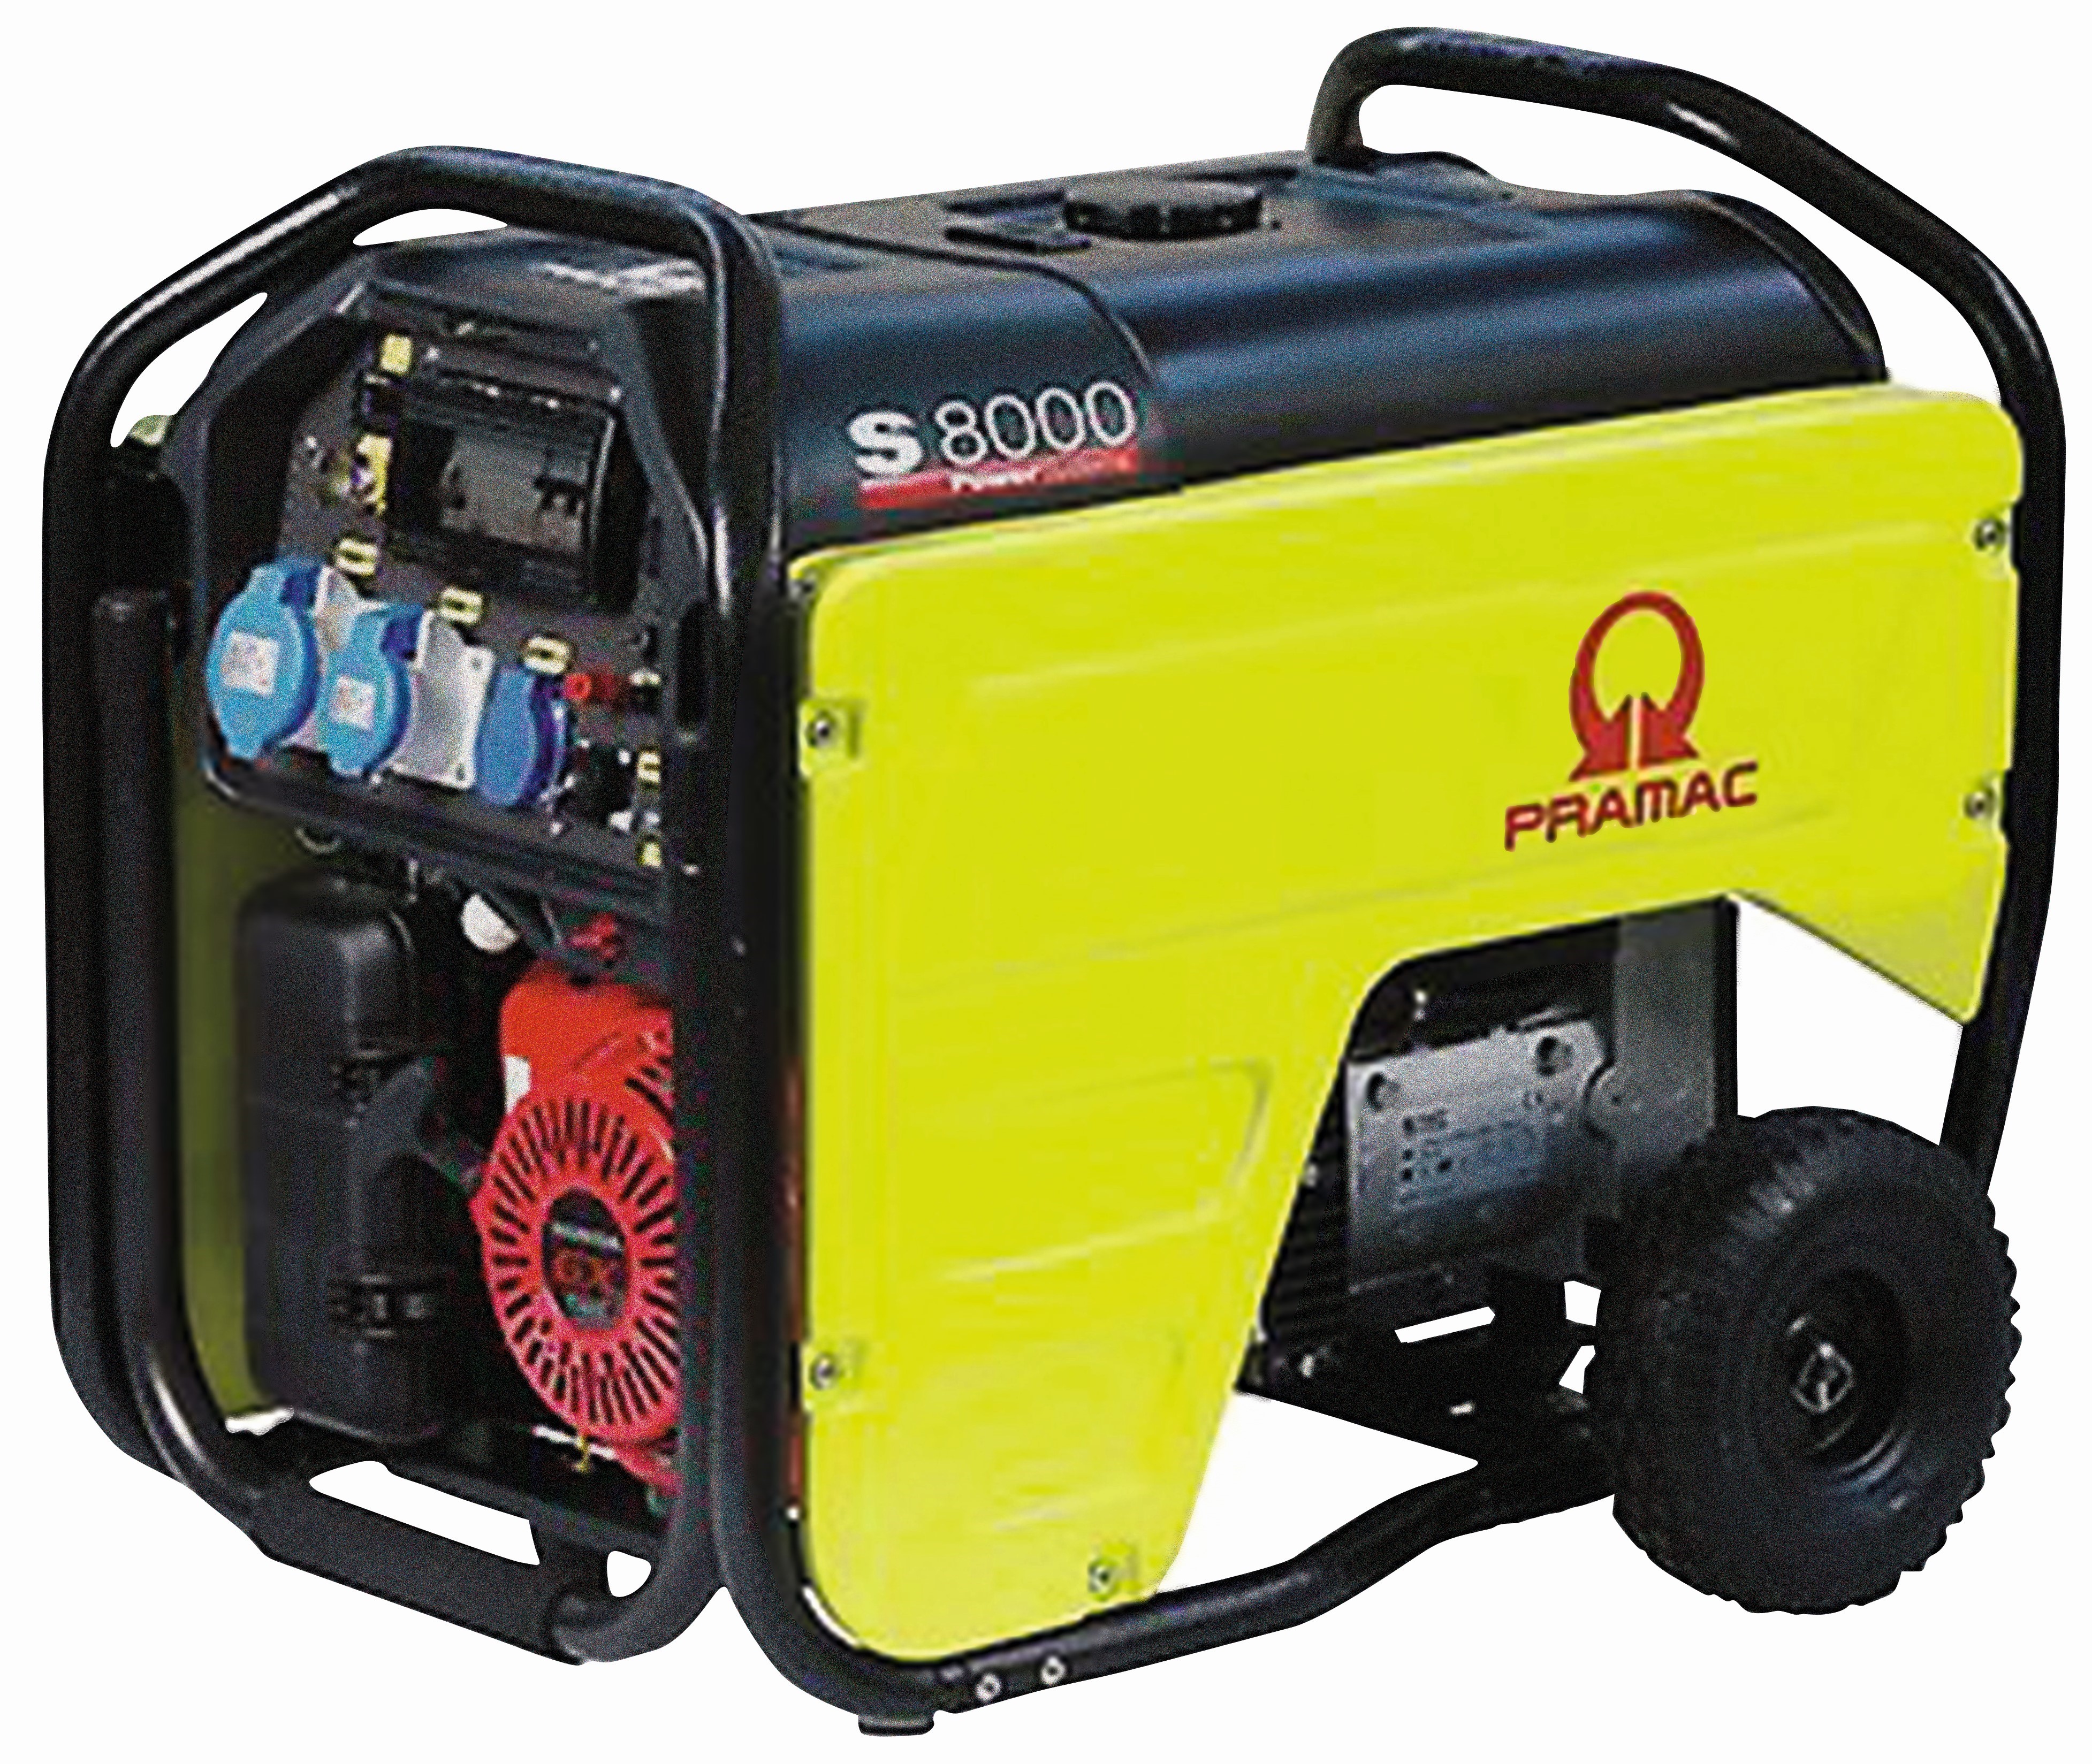 Generator S-8000 S (230V) AVR Honda bensin 7,2 kVa